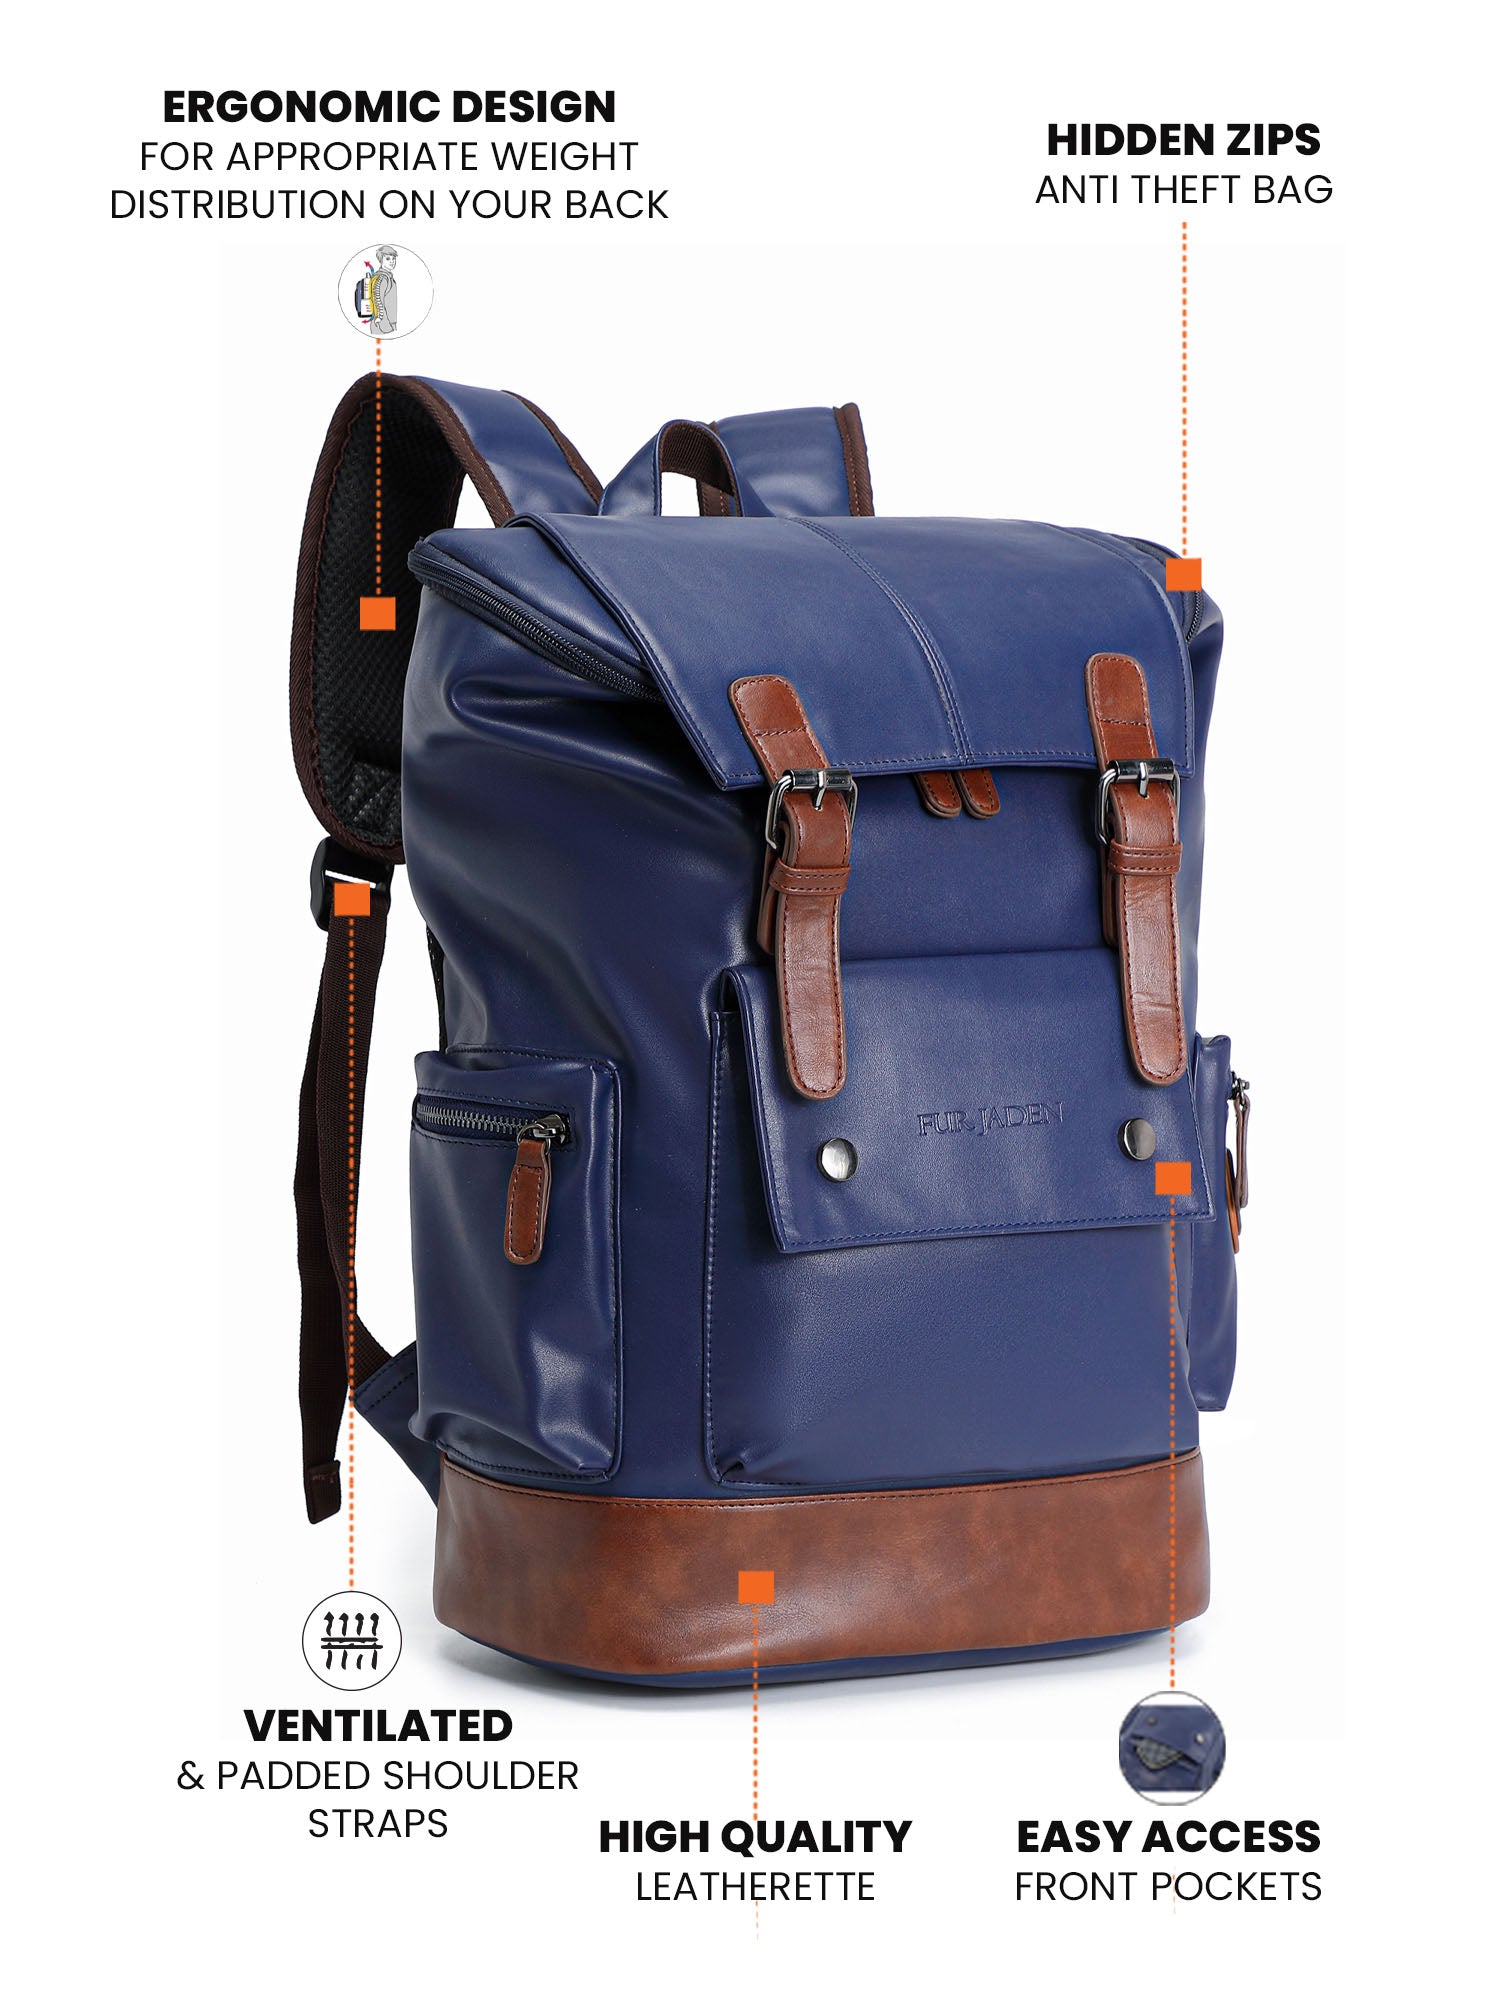 Fur Jaden Midnight Navy Blue Leatherette Anti Theft 15.6 Inch Laptop  Backpack – Fur Jaden Lifestyle Pvt Ltd | Sporttaschen